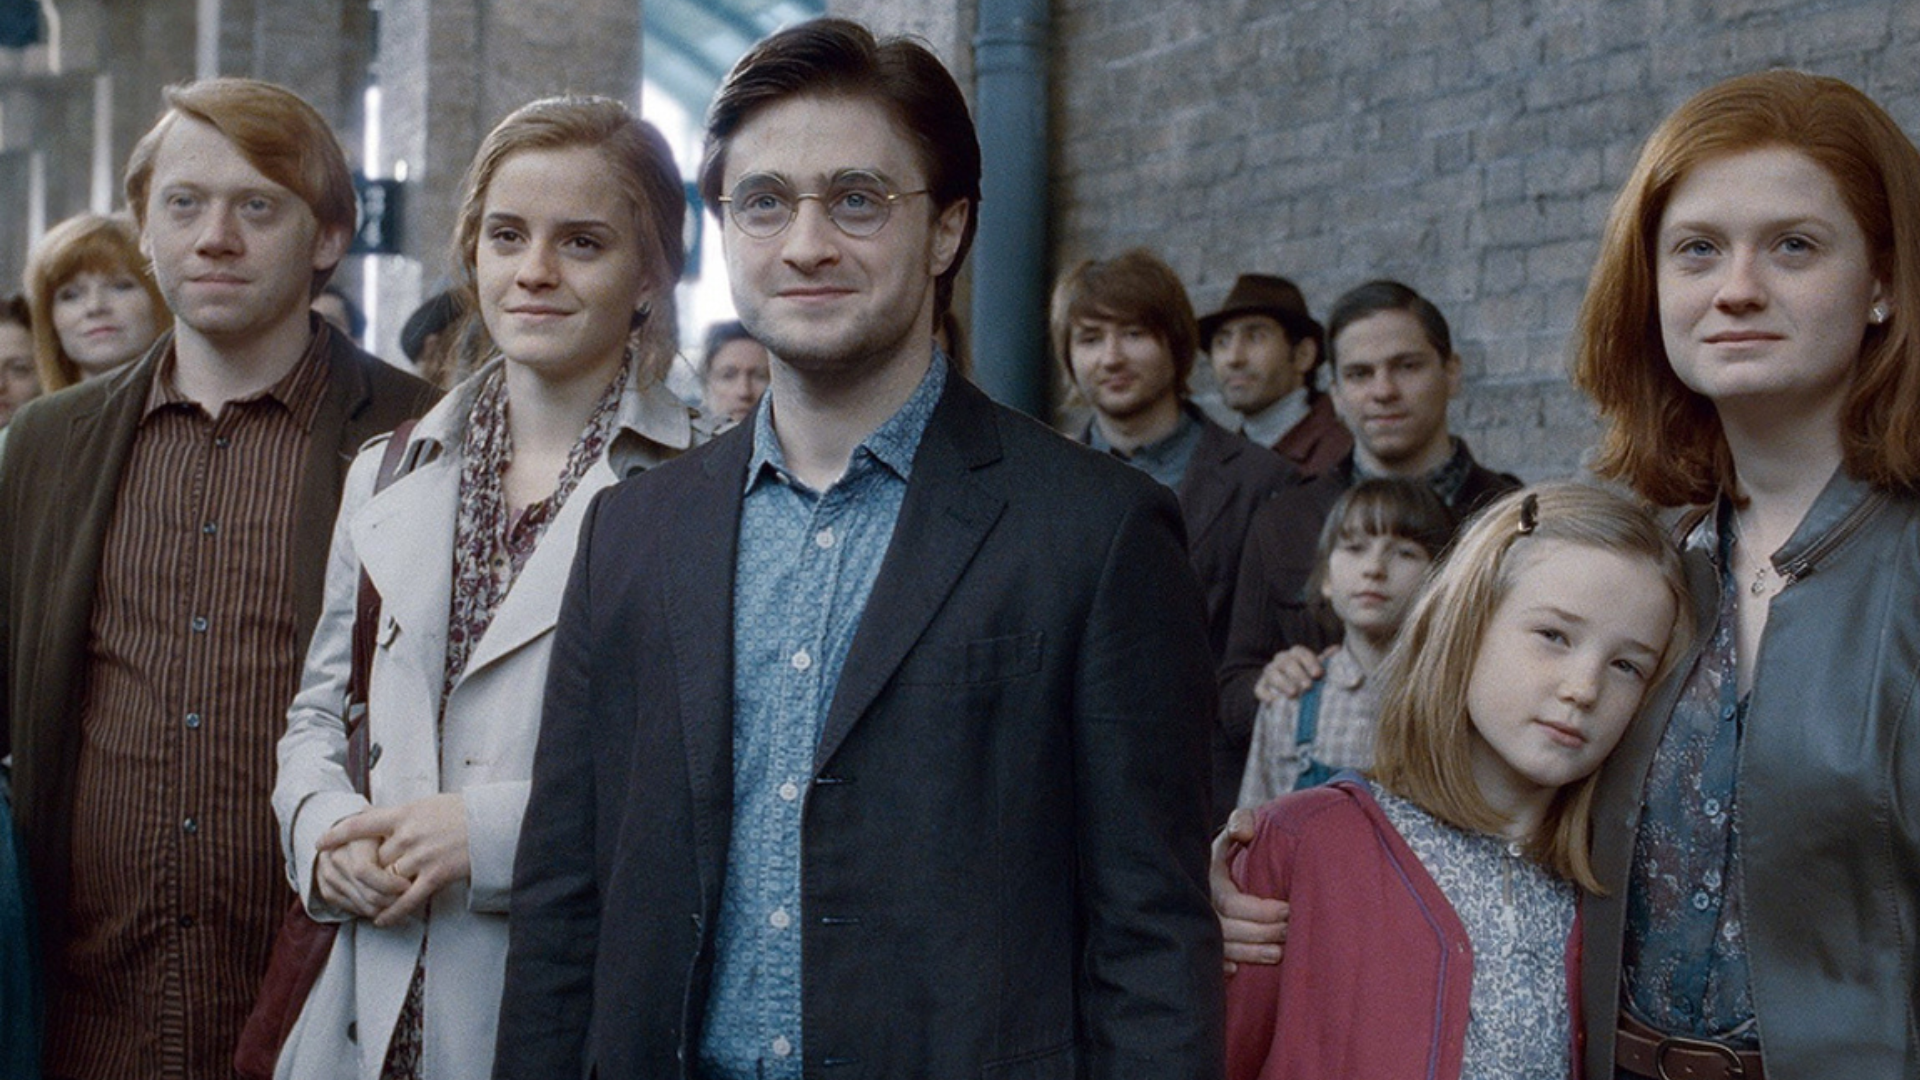 Segundo site, Harry Potter e a Criança Amaldiçoada ganhará filme com elenco original